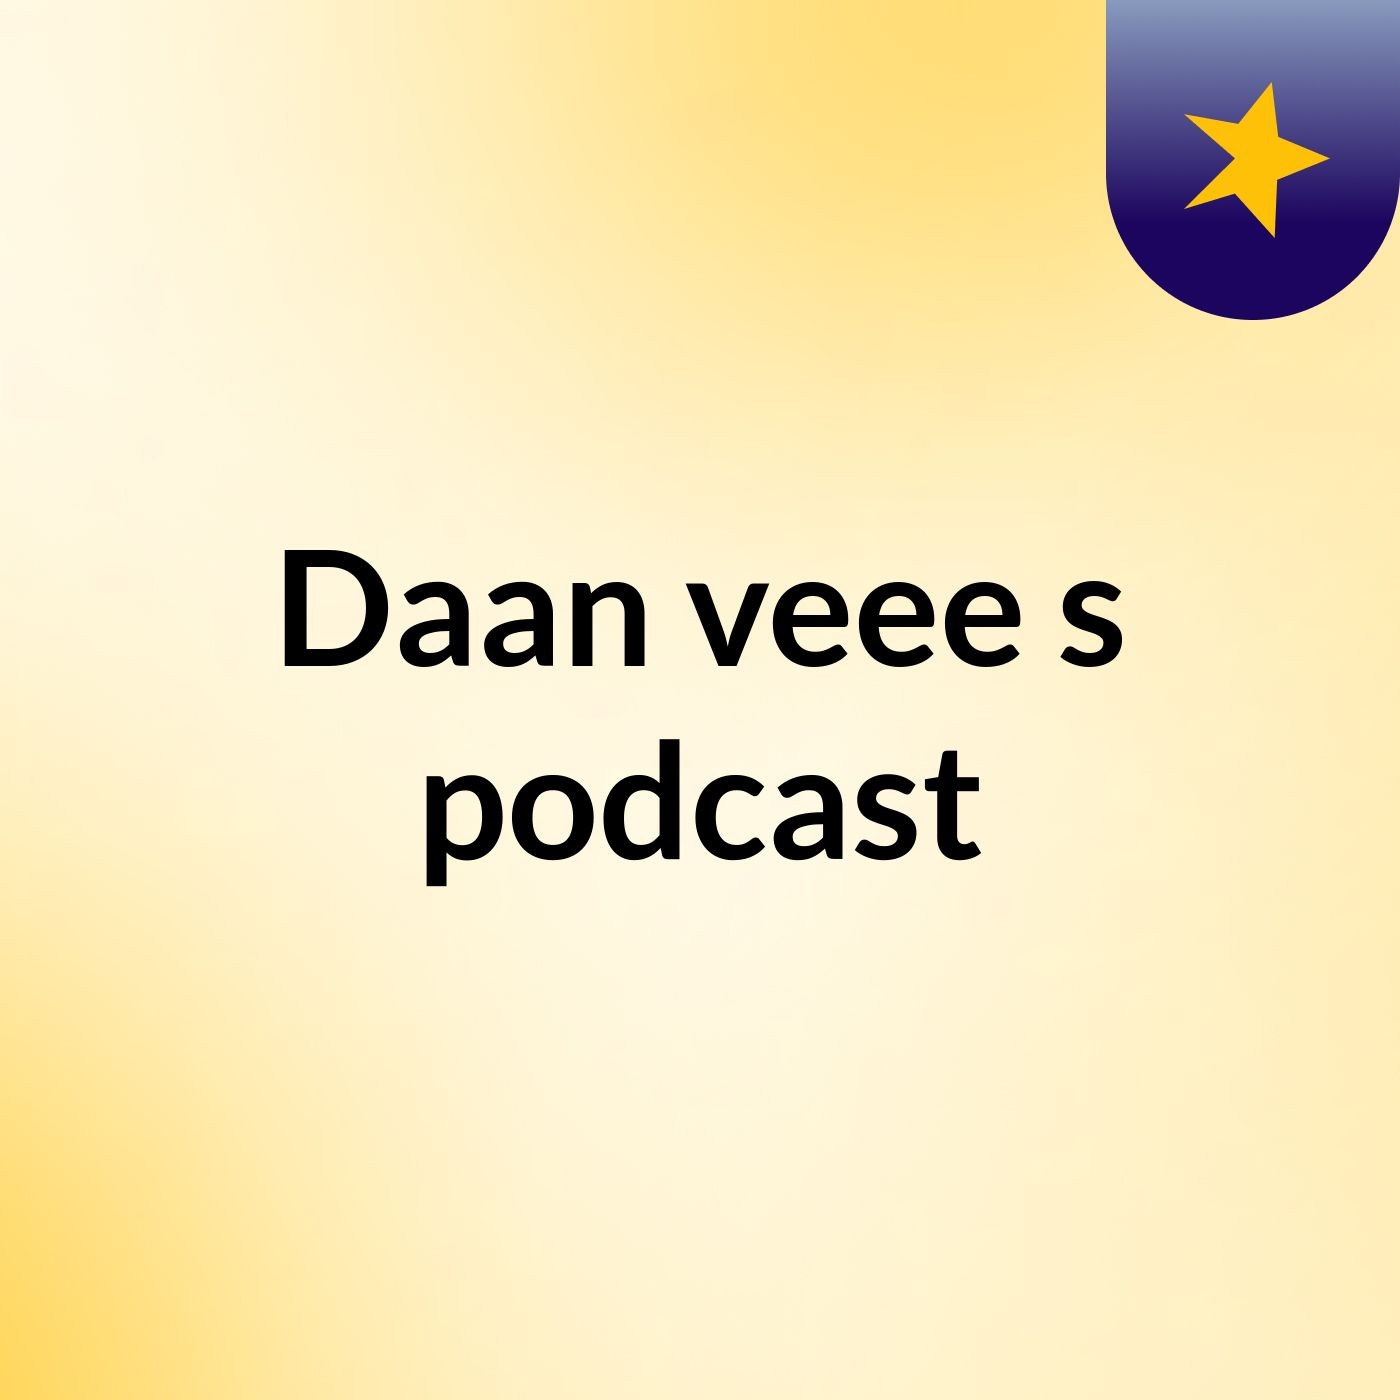 Daan veee's podcast